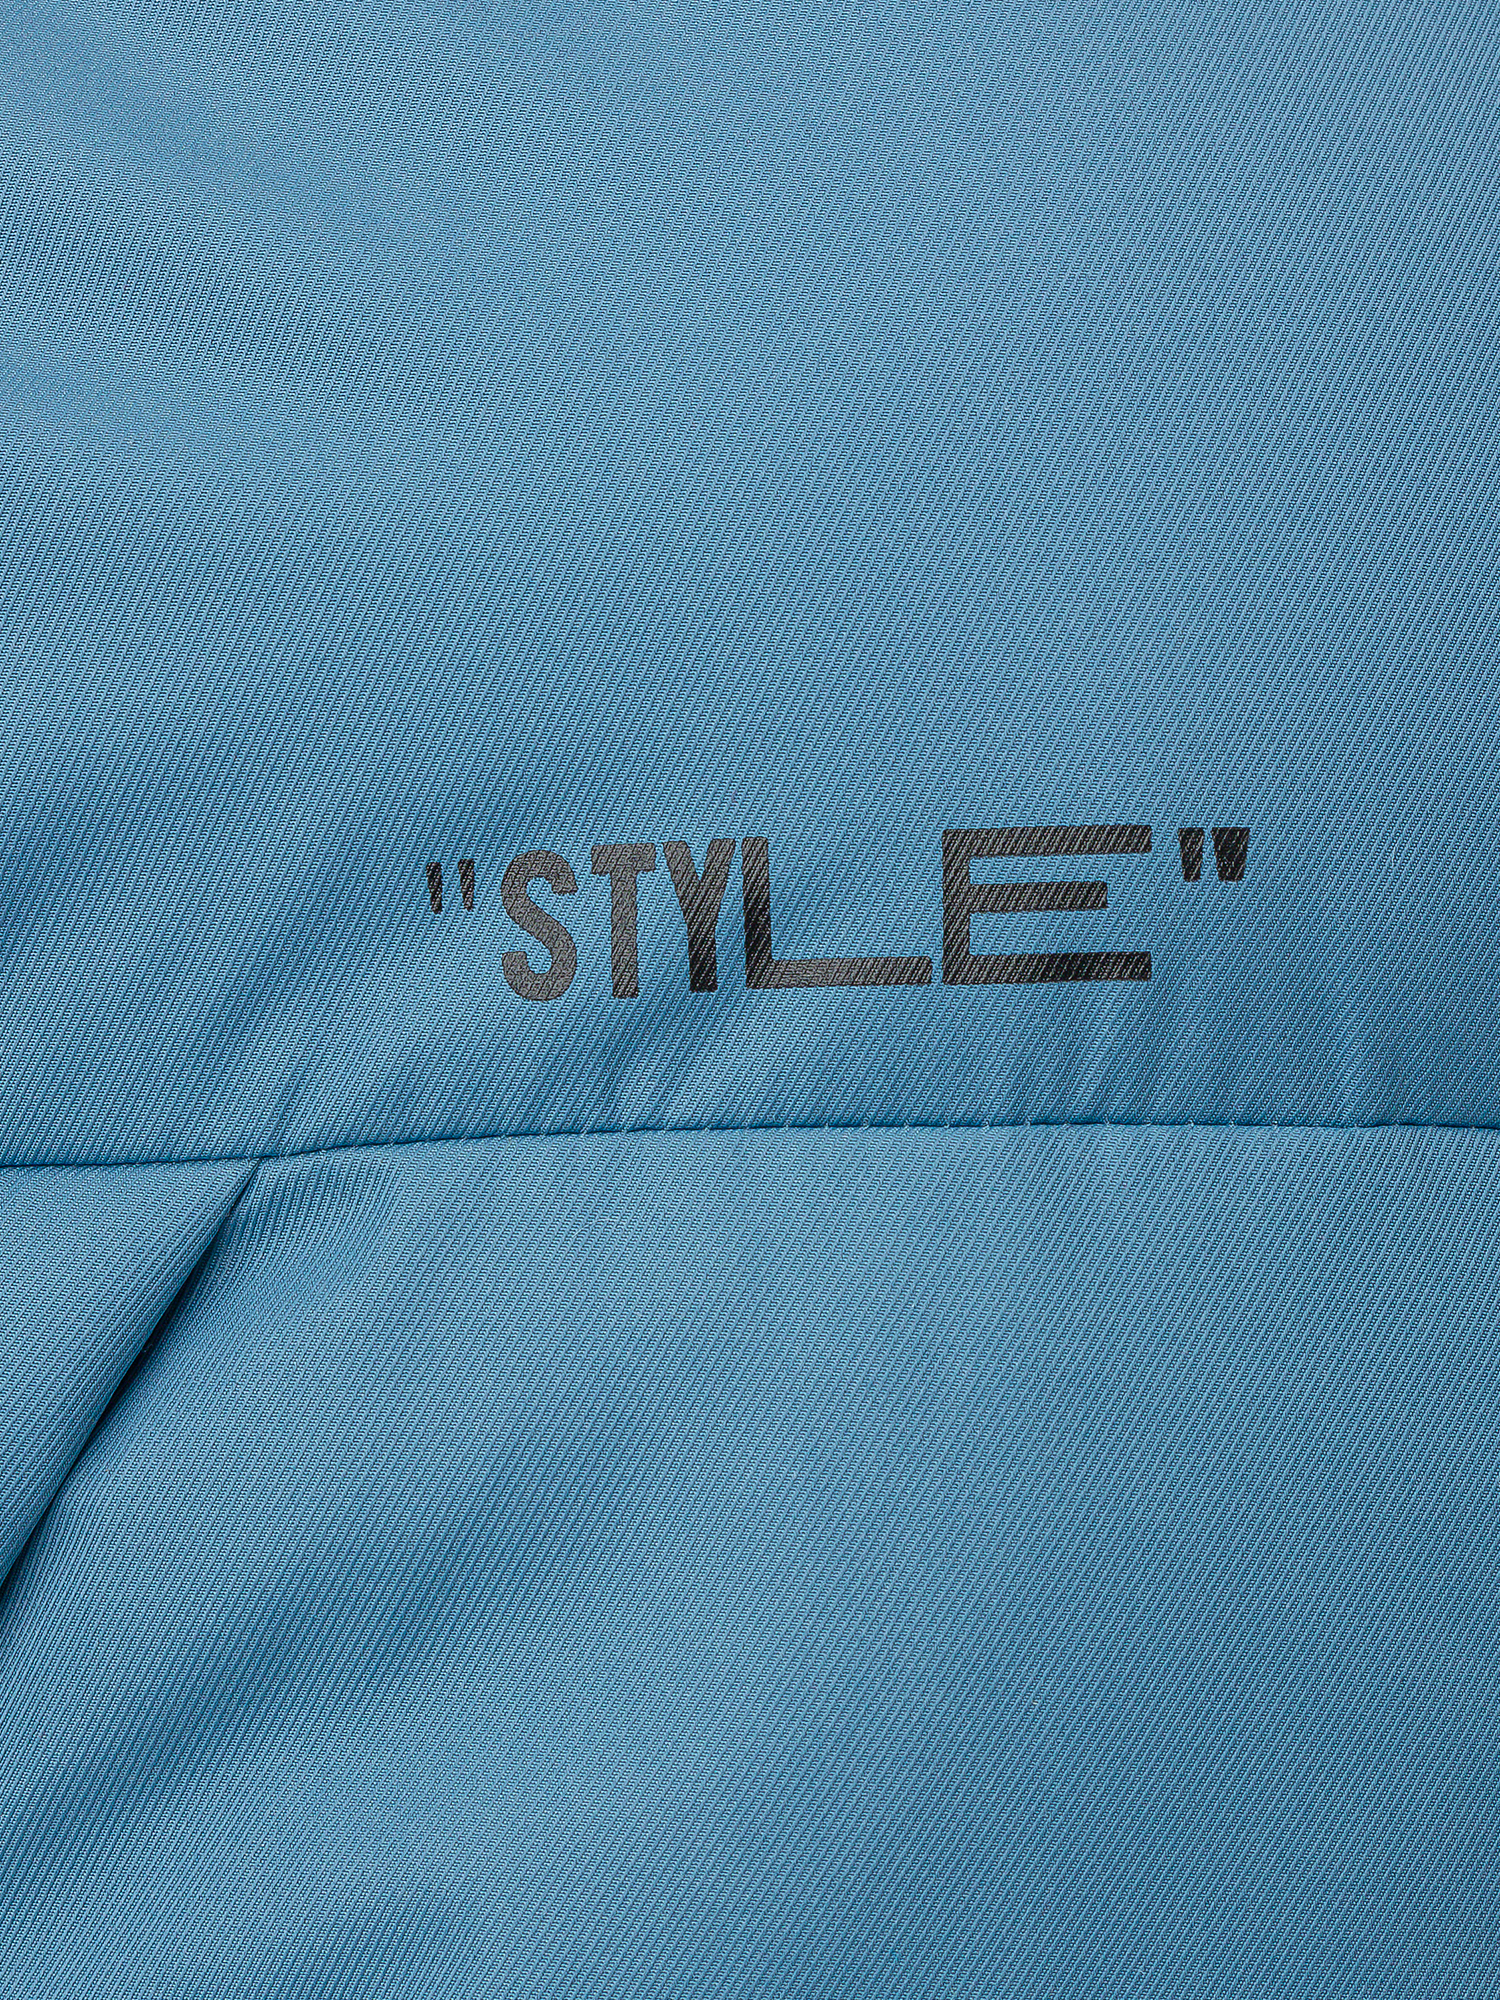 Куртка женская голубая 222OZWC41031800, размер M, цвет голубой - фото 3